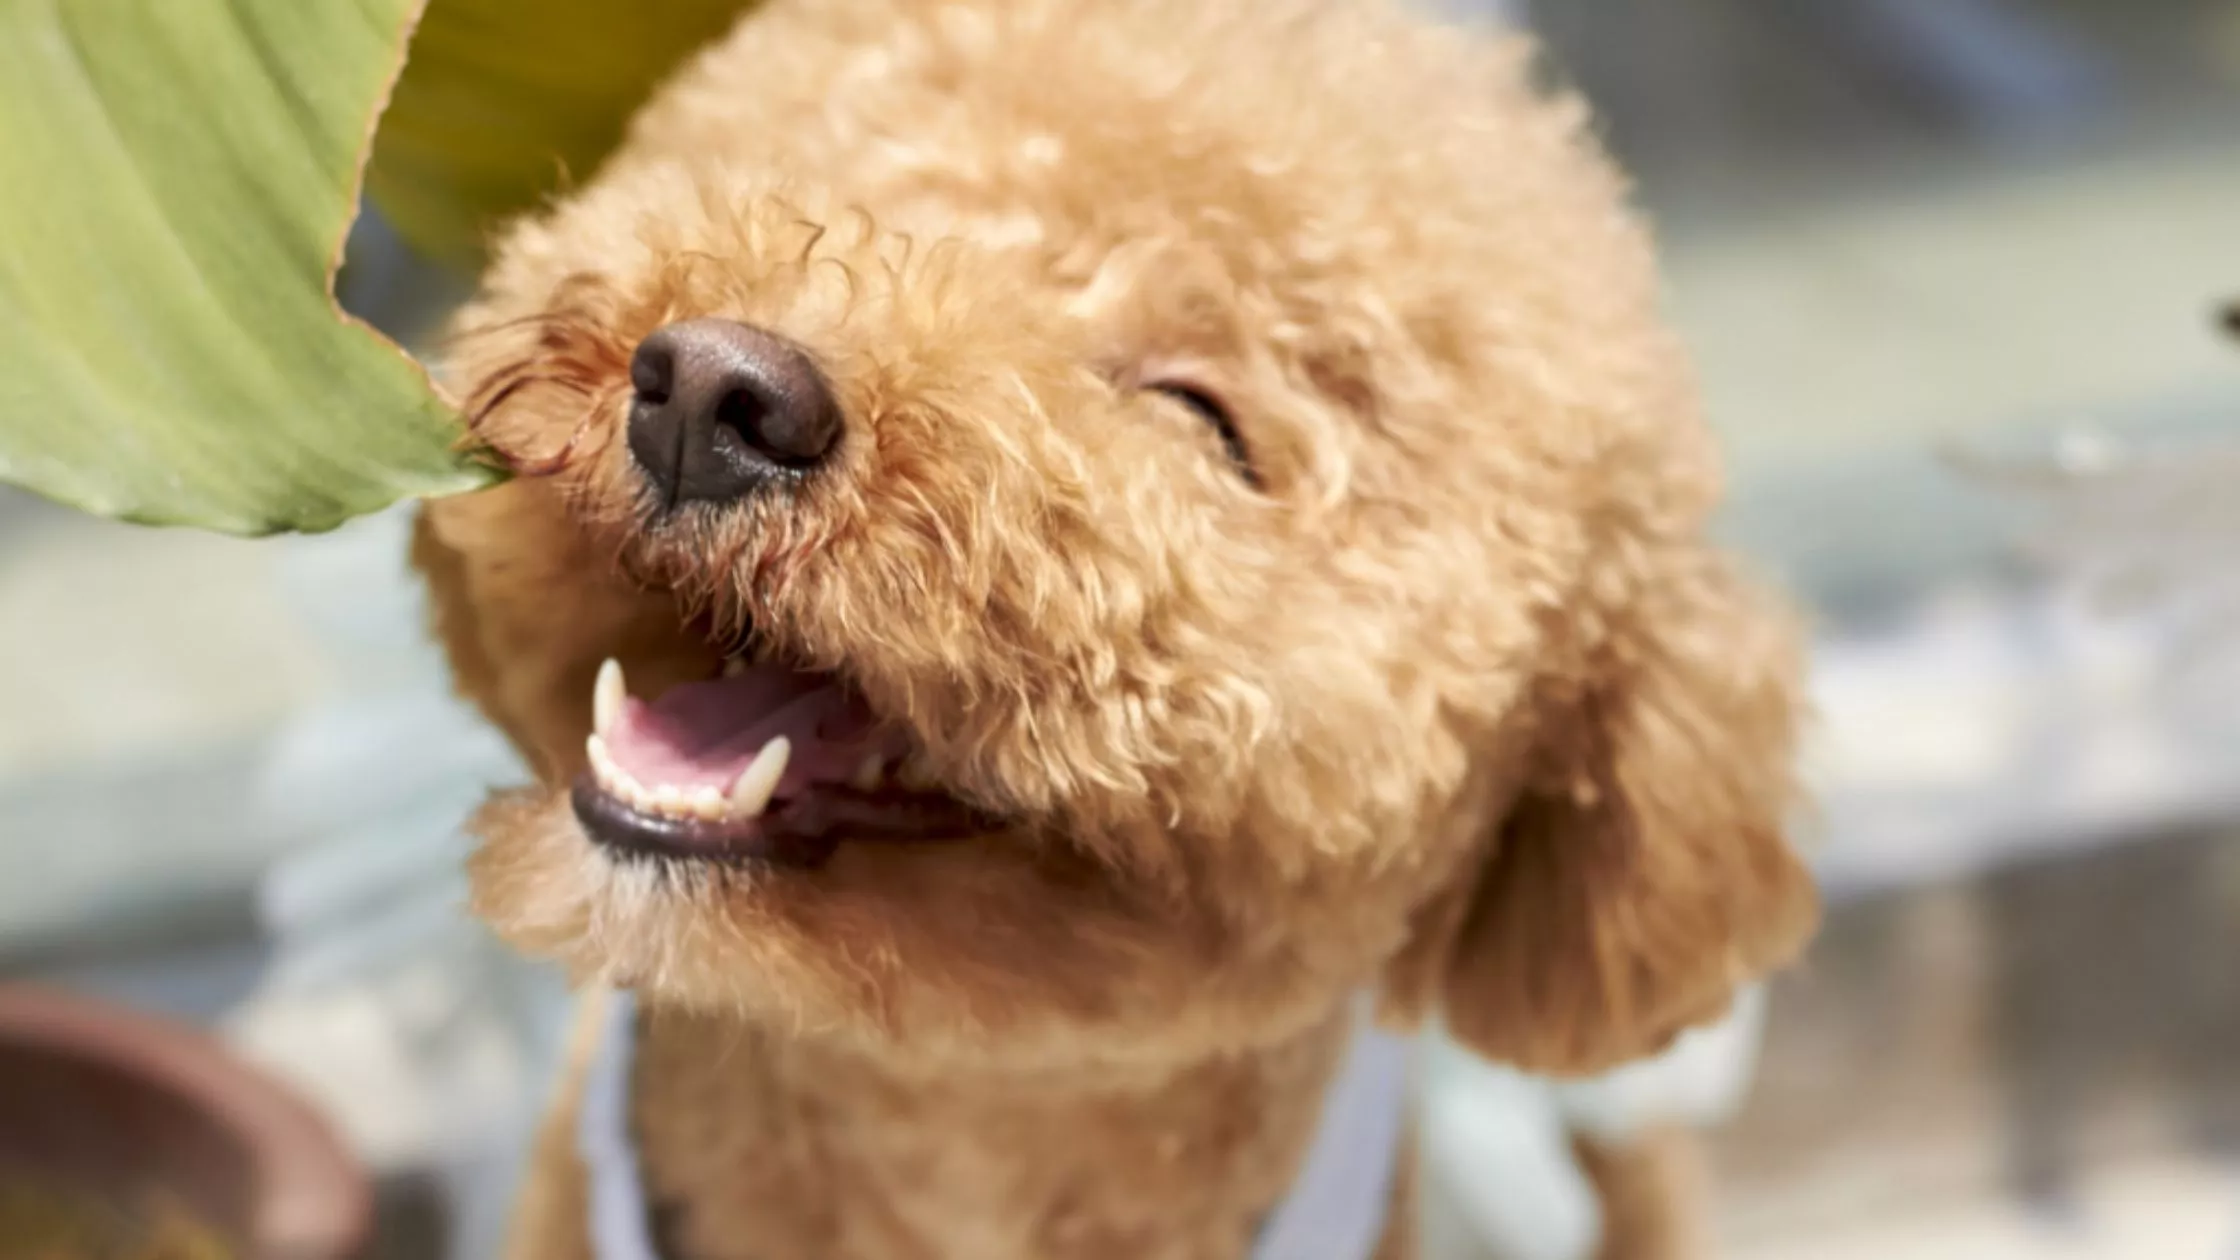 Ile zębów ma pies? Psie mleczaki Choroby zębów u psów opiekun dla psa pethomer domowy hotel dla psów